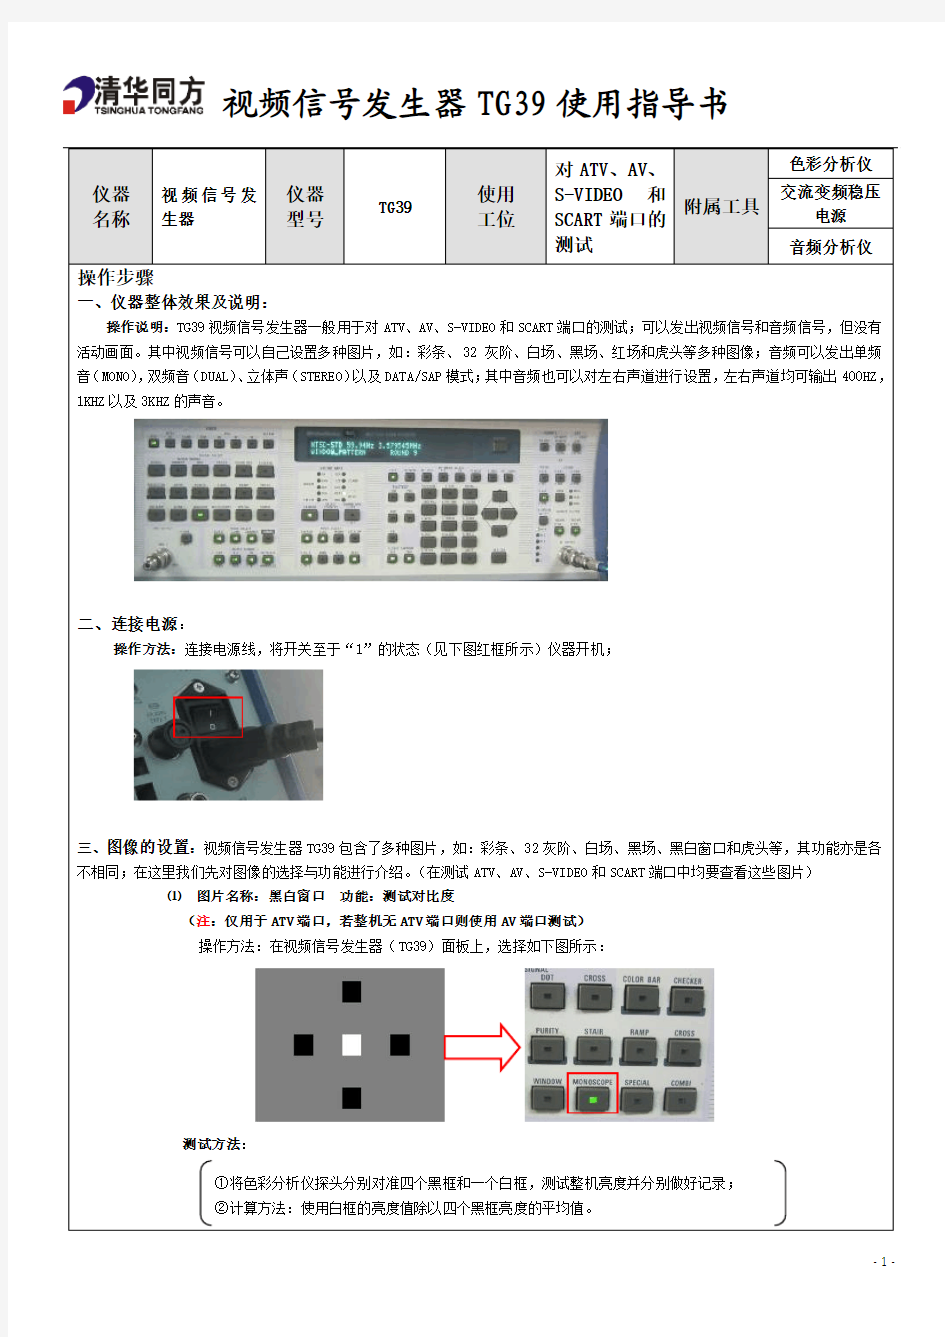 视频信号发生器TG39指导书A1版